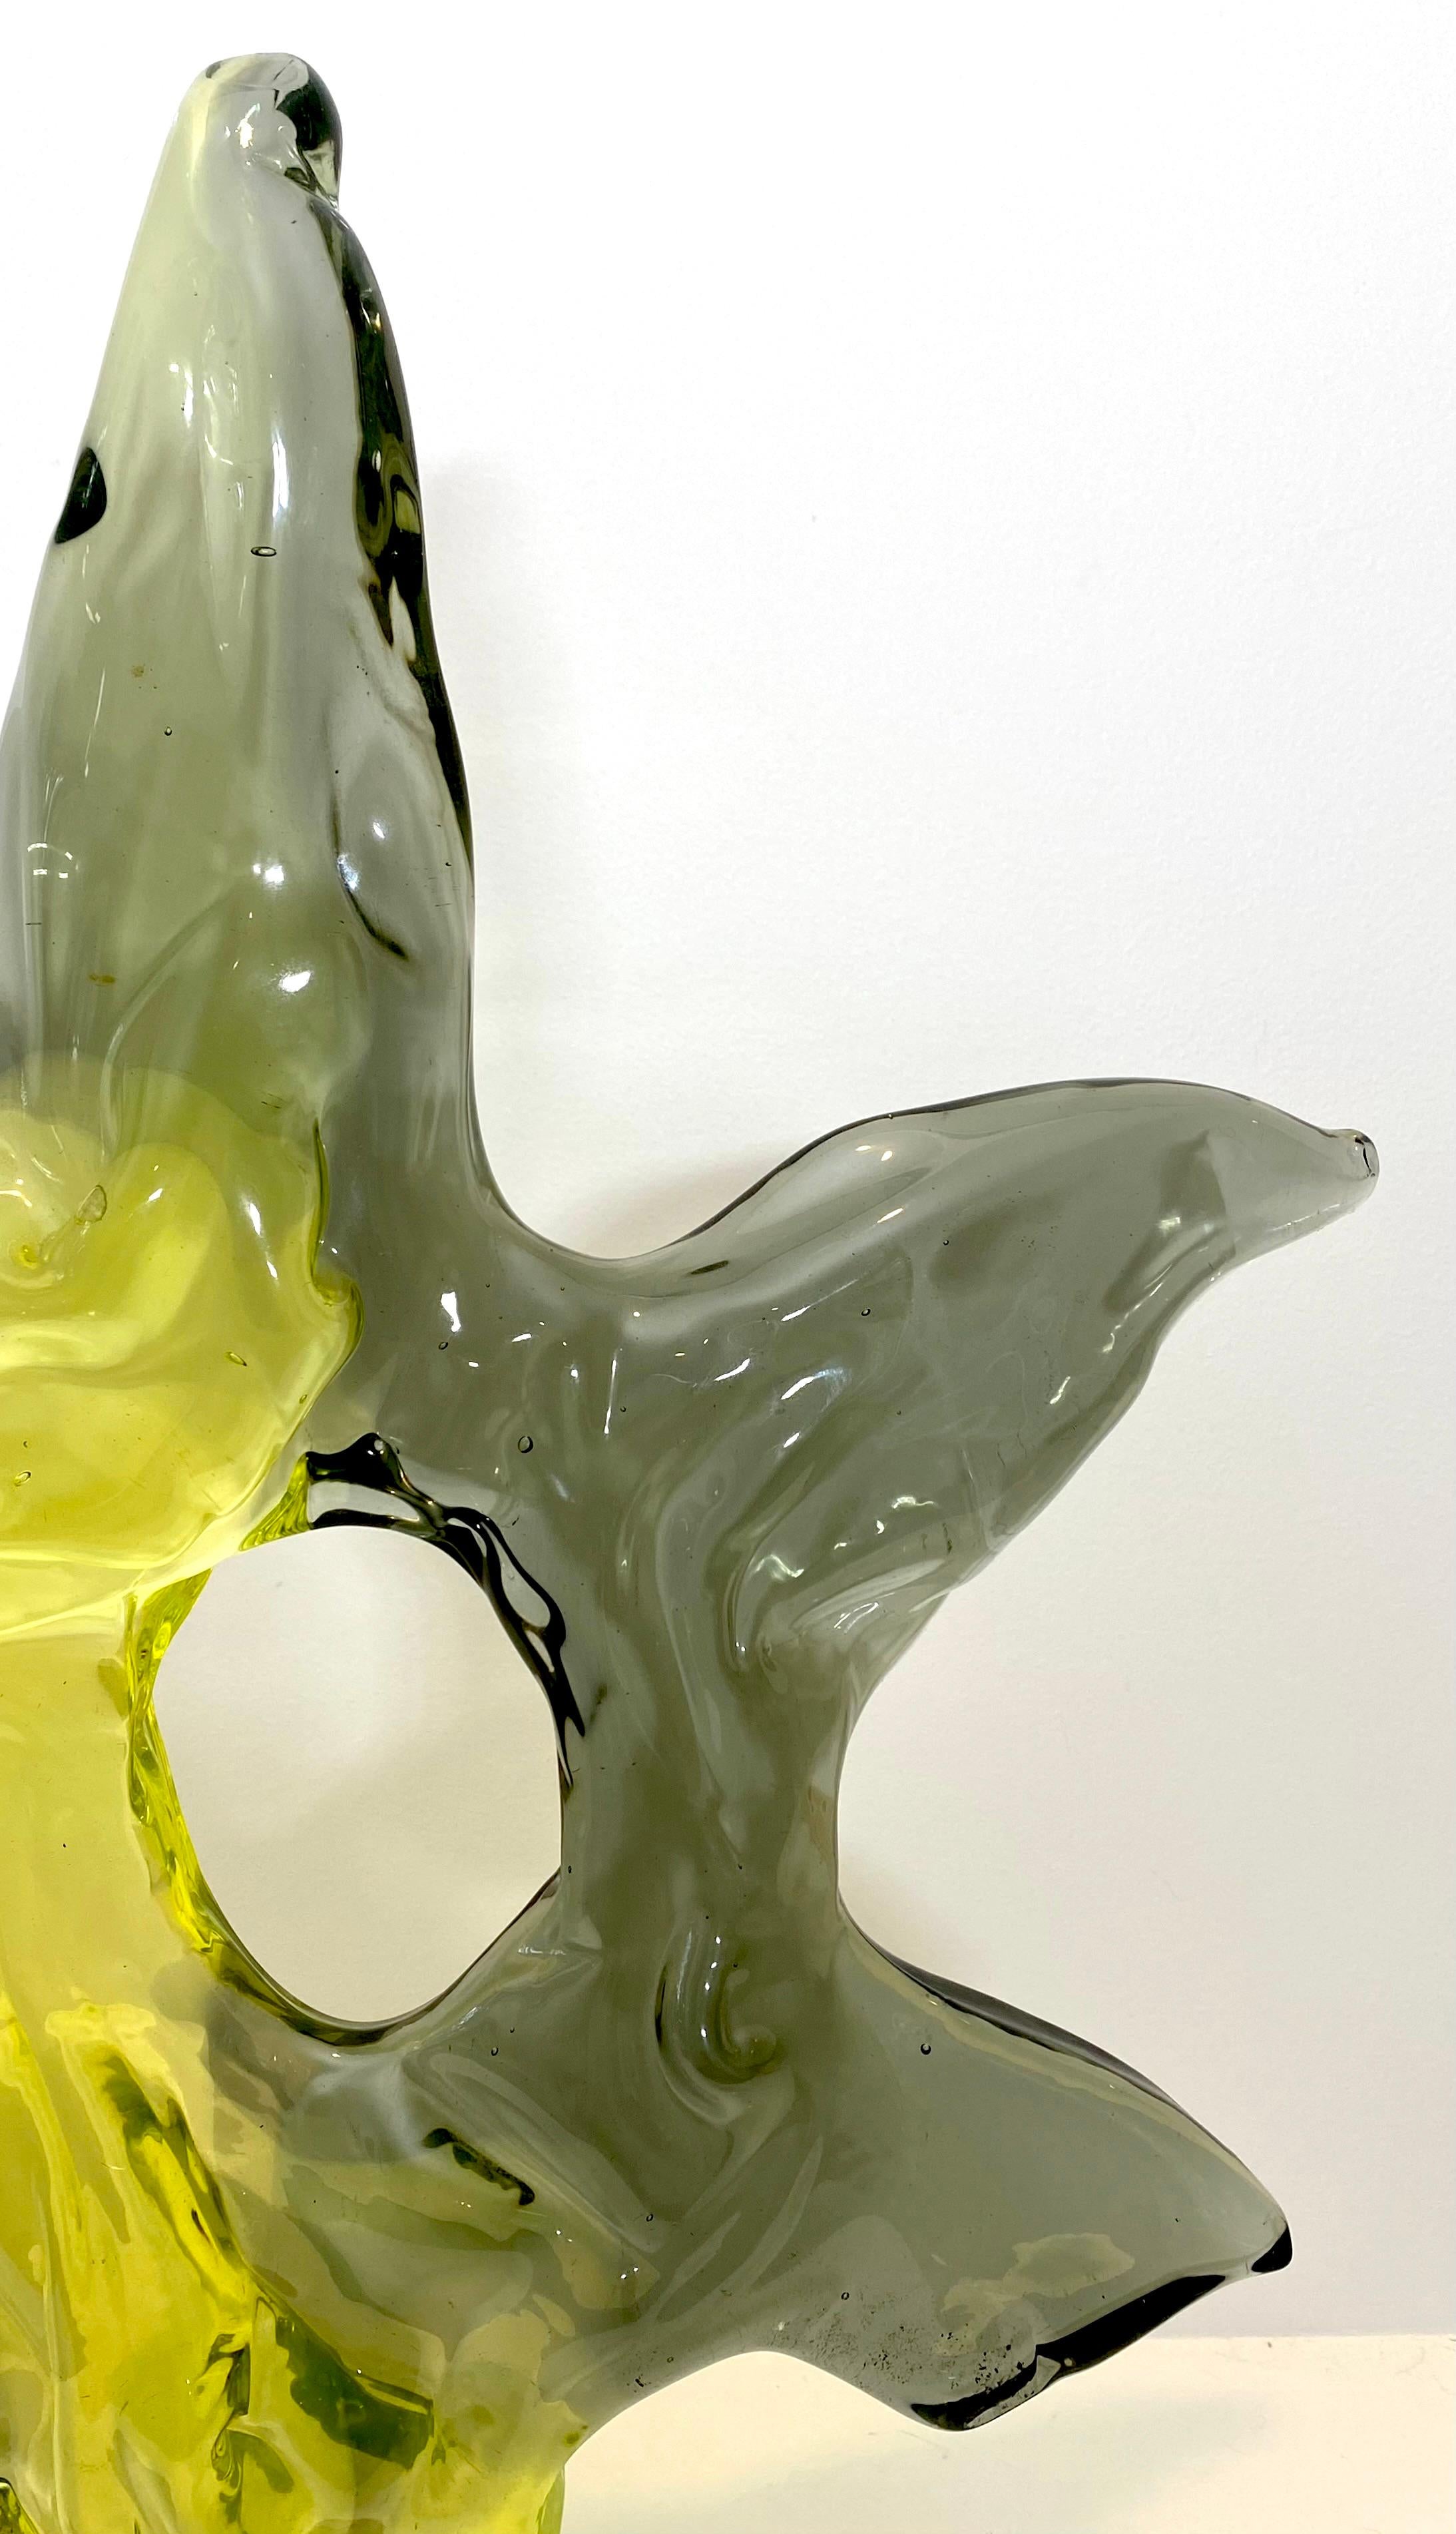 Cette sculpture massive en verre bicolore de Livio Seguso, réalisée par Luciano Gaspari, est étonnante et stupéfiante. Gaspari et Seguso ont souvent collaboré à des sculptures de Murano et celle-ci est un véritable chef-d'œuvre avec deux fois plus